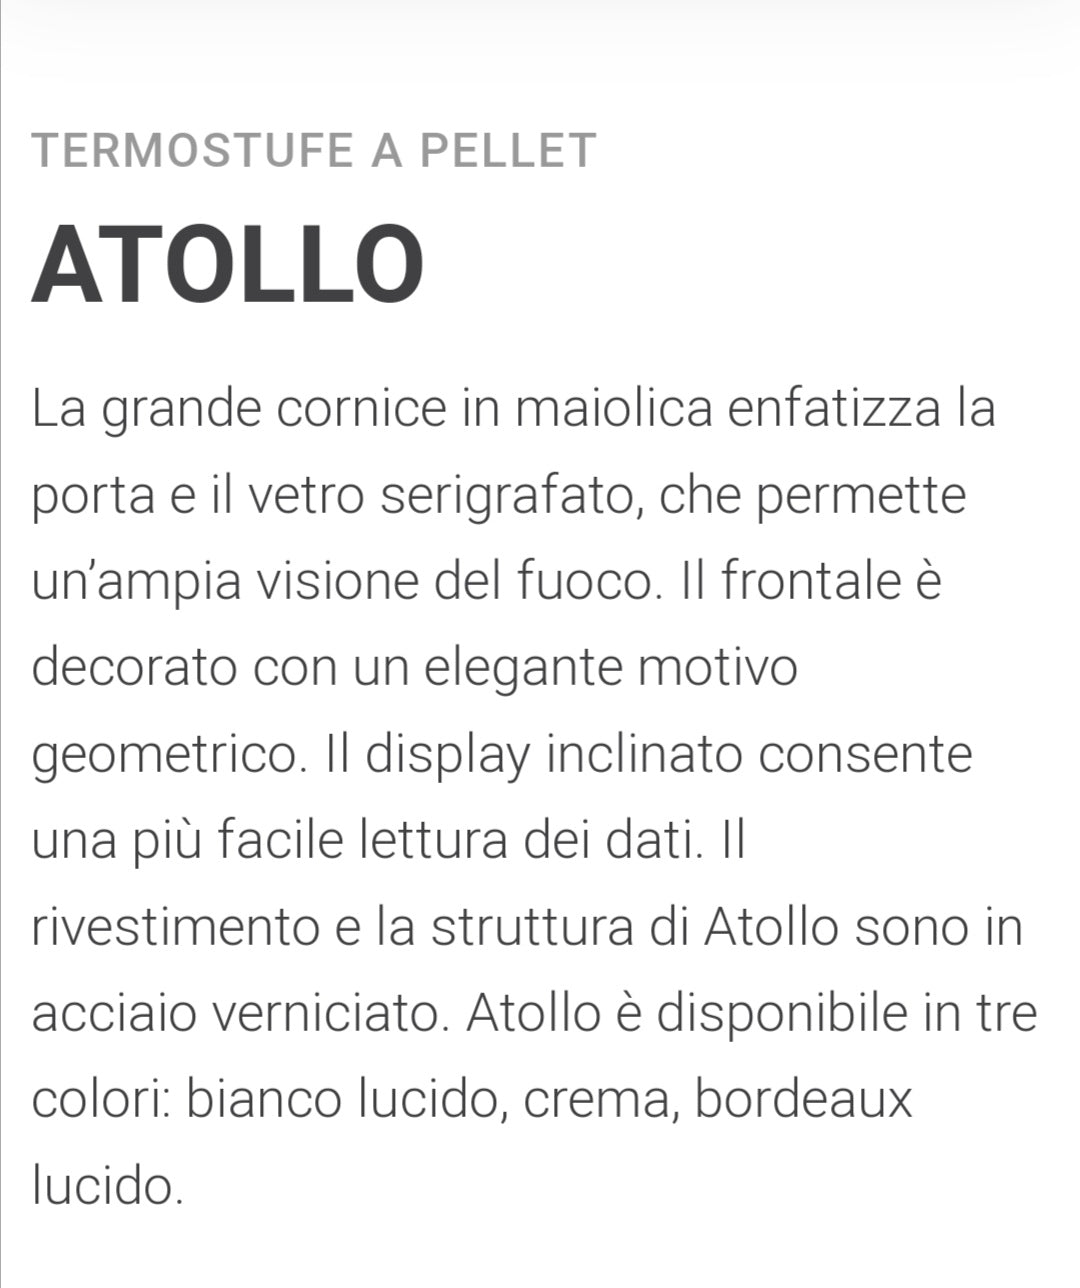 Atollo AQ27S Stufa Idro a Pellet Caminetti Montegrappa